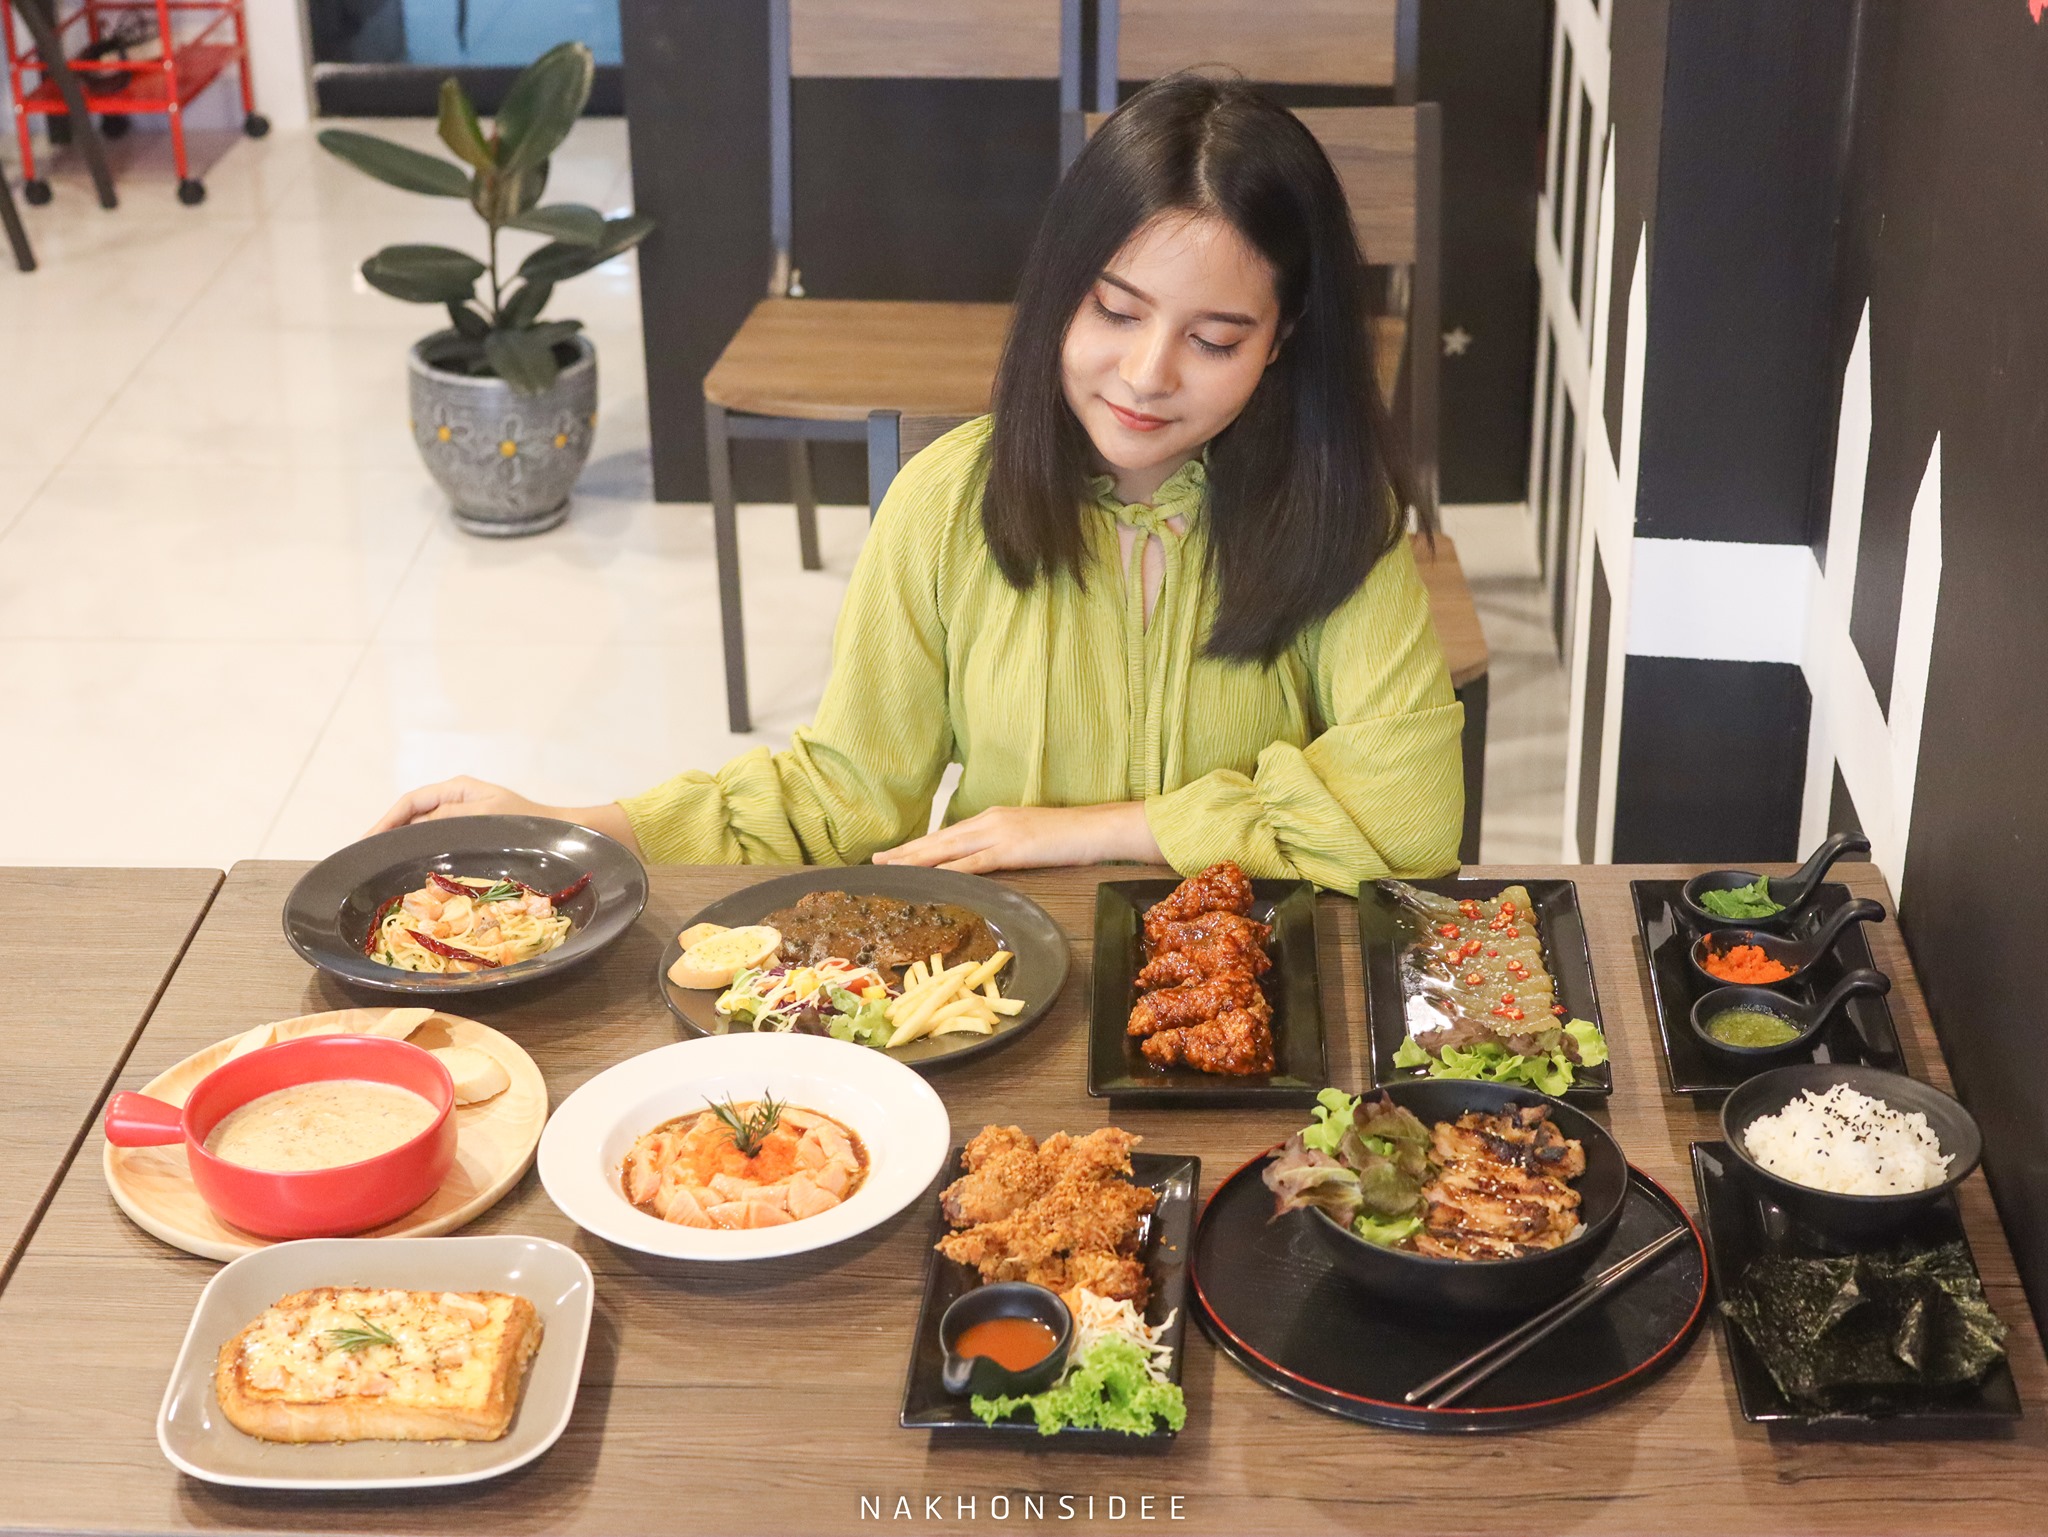  อร่อยน้า-บอกเลย อาหาร,เครื่องดื่ม,เกาหลี,ญี่ปุ่น,อาหารไทย,ฝรั่ง,คาเฟ่,นครศรีธรรมราช